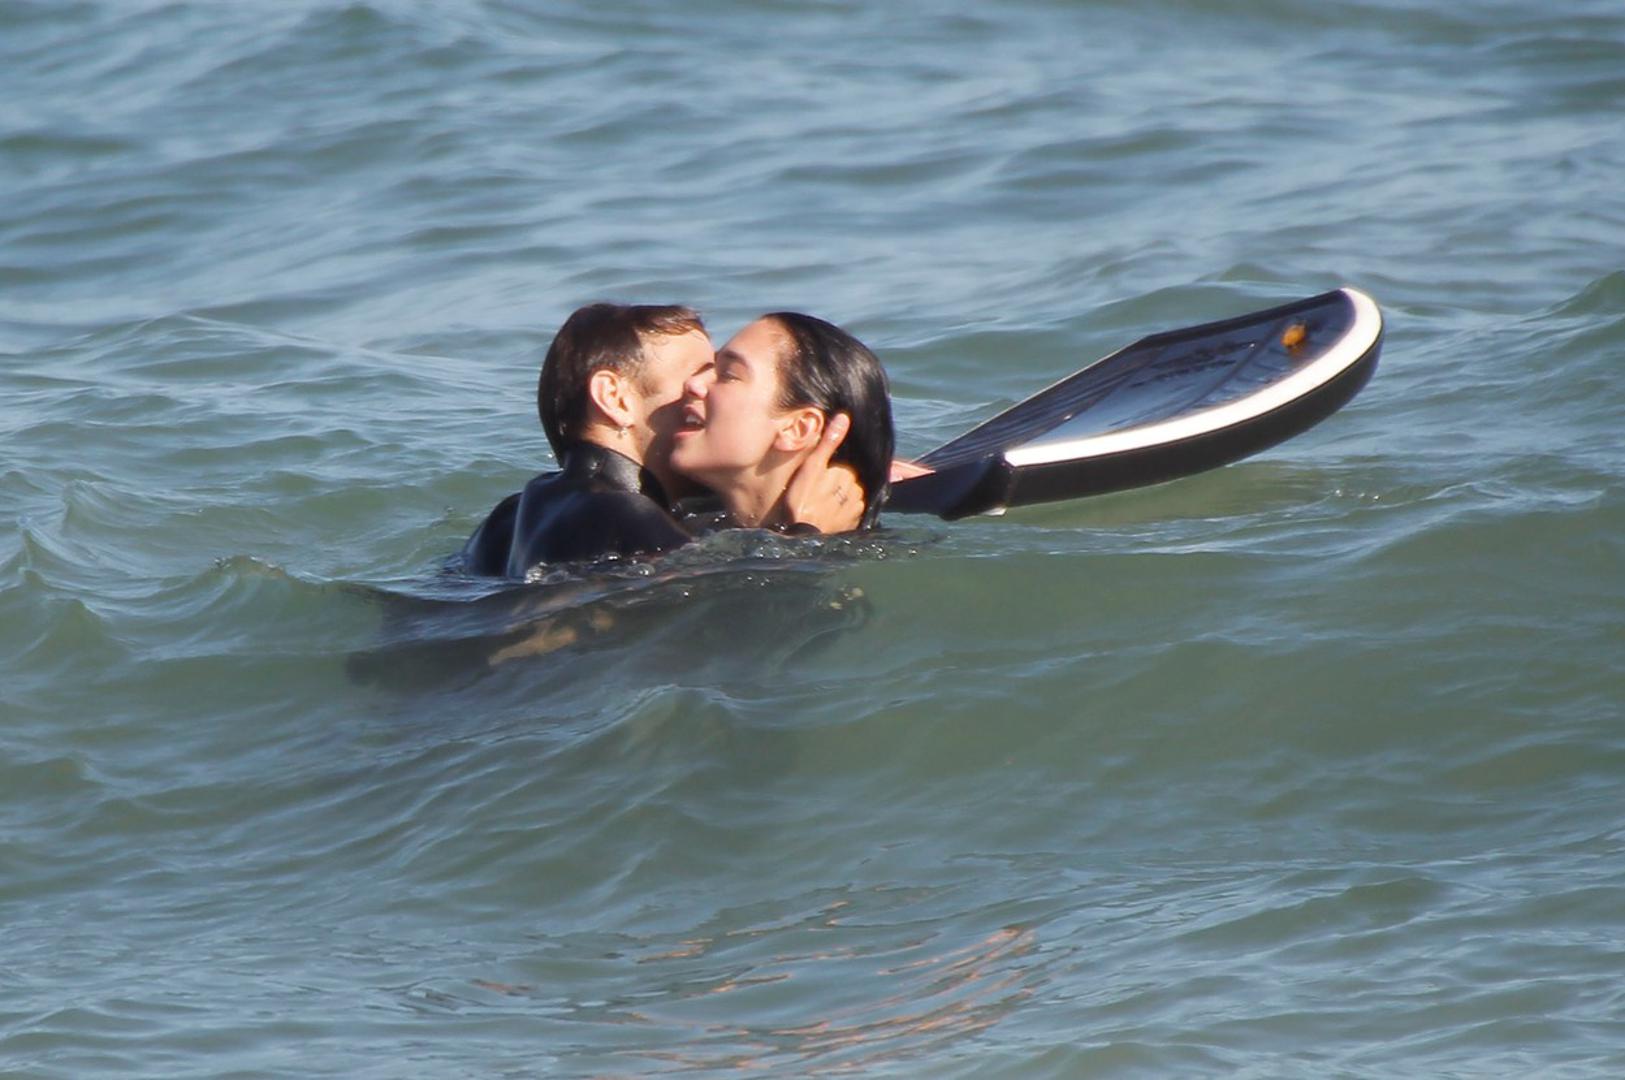 Pjevačica Dua Lipa i njen novi dečko, maneken Anwar Hadid prepustili su se strastima na plaži u Malibuu. Par je surfao, a svaki put kad su pali u vodu nisu mogli odoljeti jedno drugome i izmjenjivali su strastvene poljupce. 